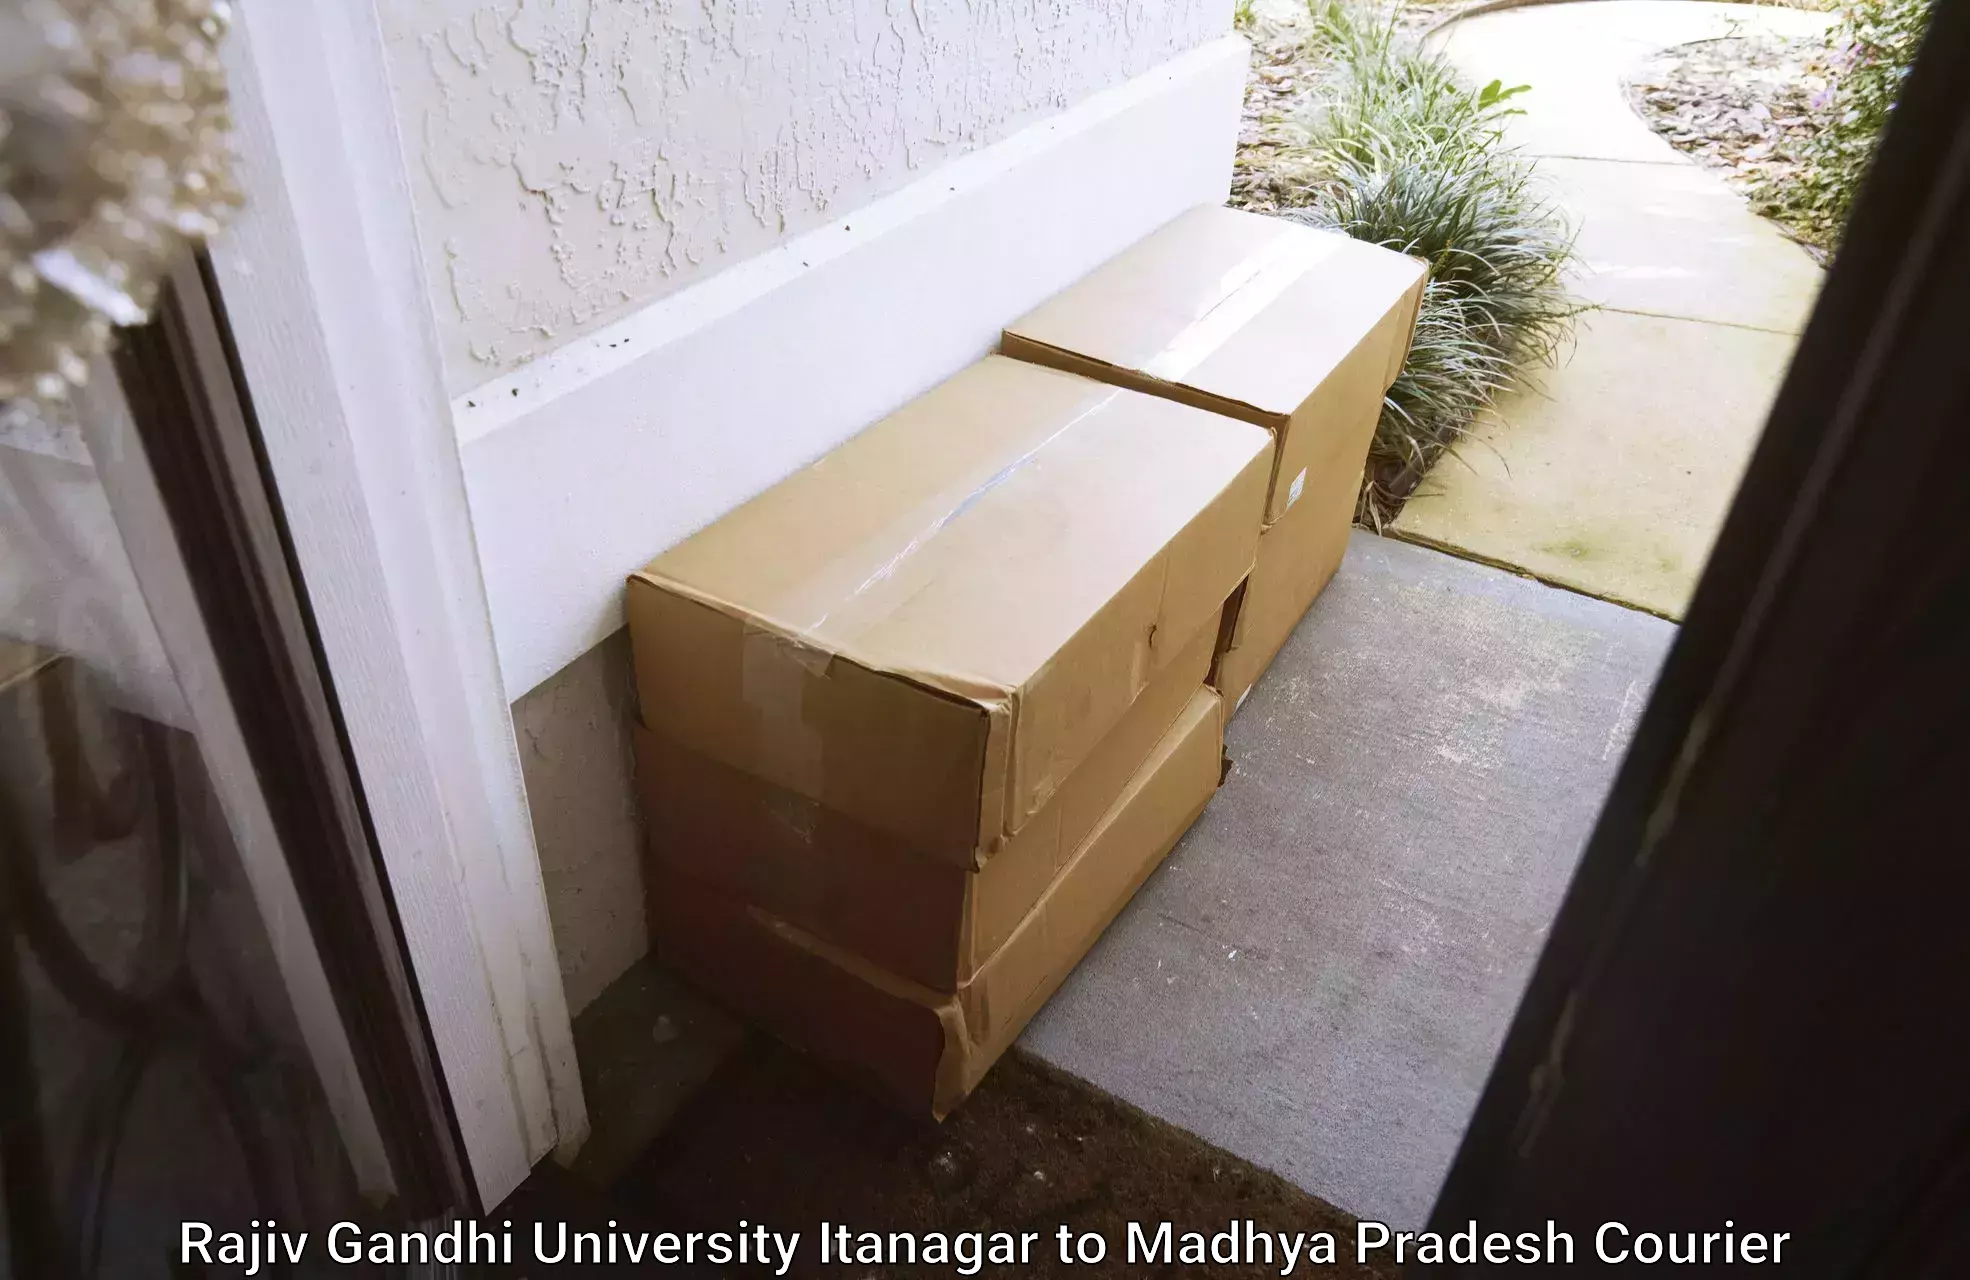 High-speed parcel service Rajiv Gandhi University Itanagar to Nagda